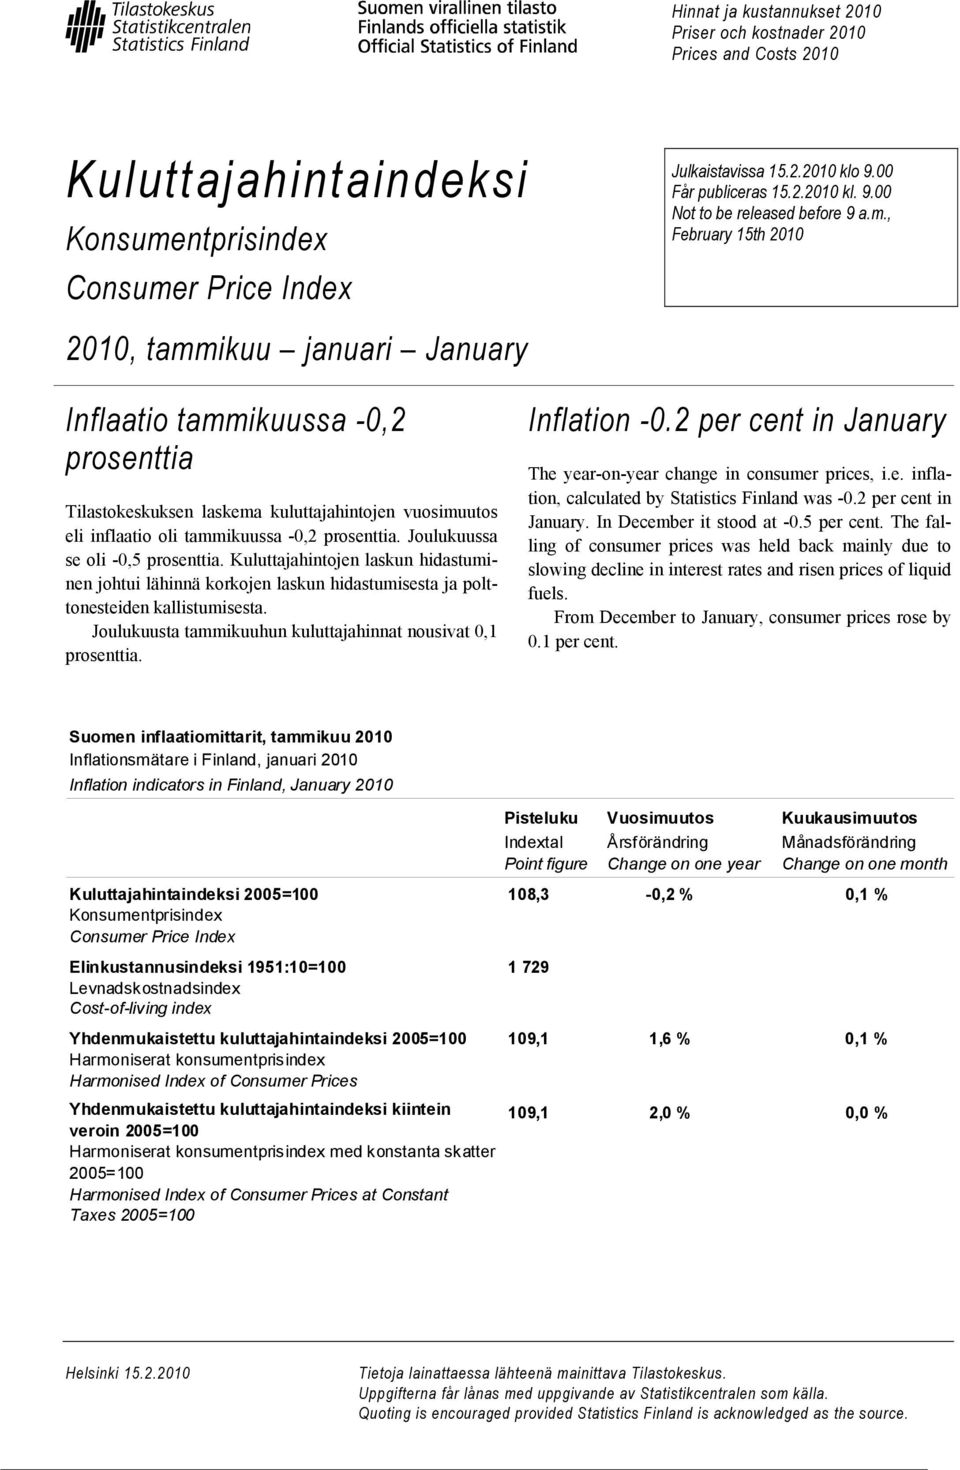 , February 15th 2010 Inflaatio tammikuussa -0,2 prosenttia Tilastokeskuksen laskema kuluttajahintojen vuosimuutos eli inflaatio oli tammikuussa -0,2 prosenttia. Joulukuussa se oli -0,5 prosenttia.